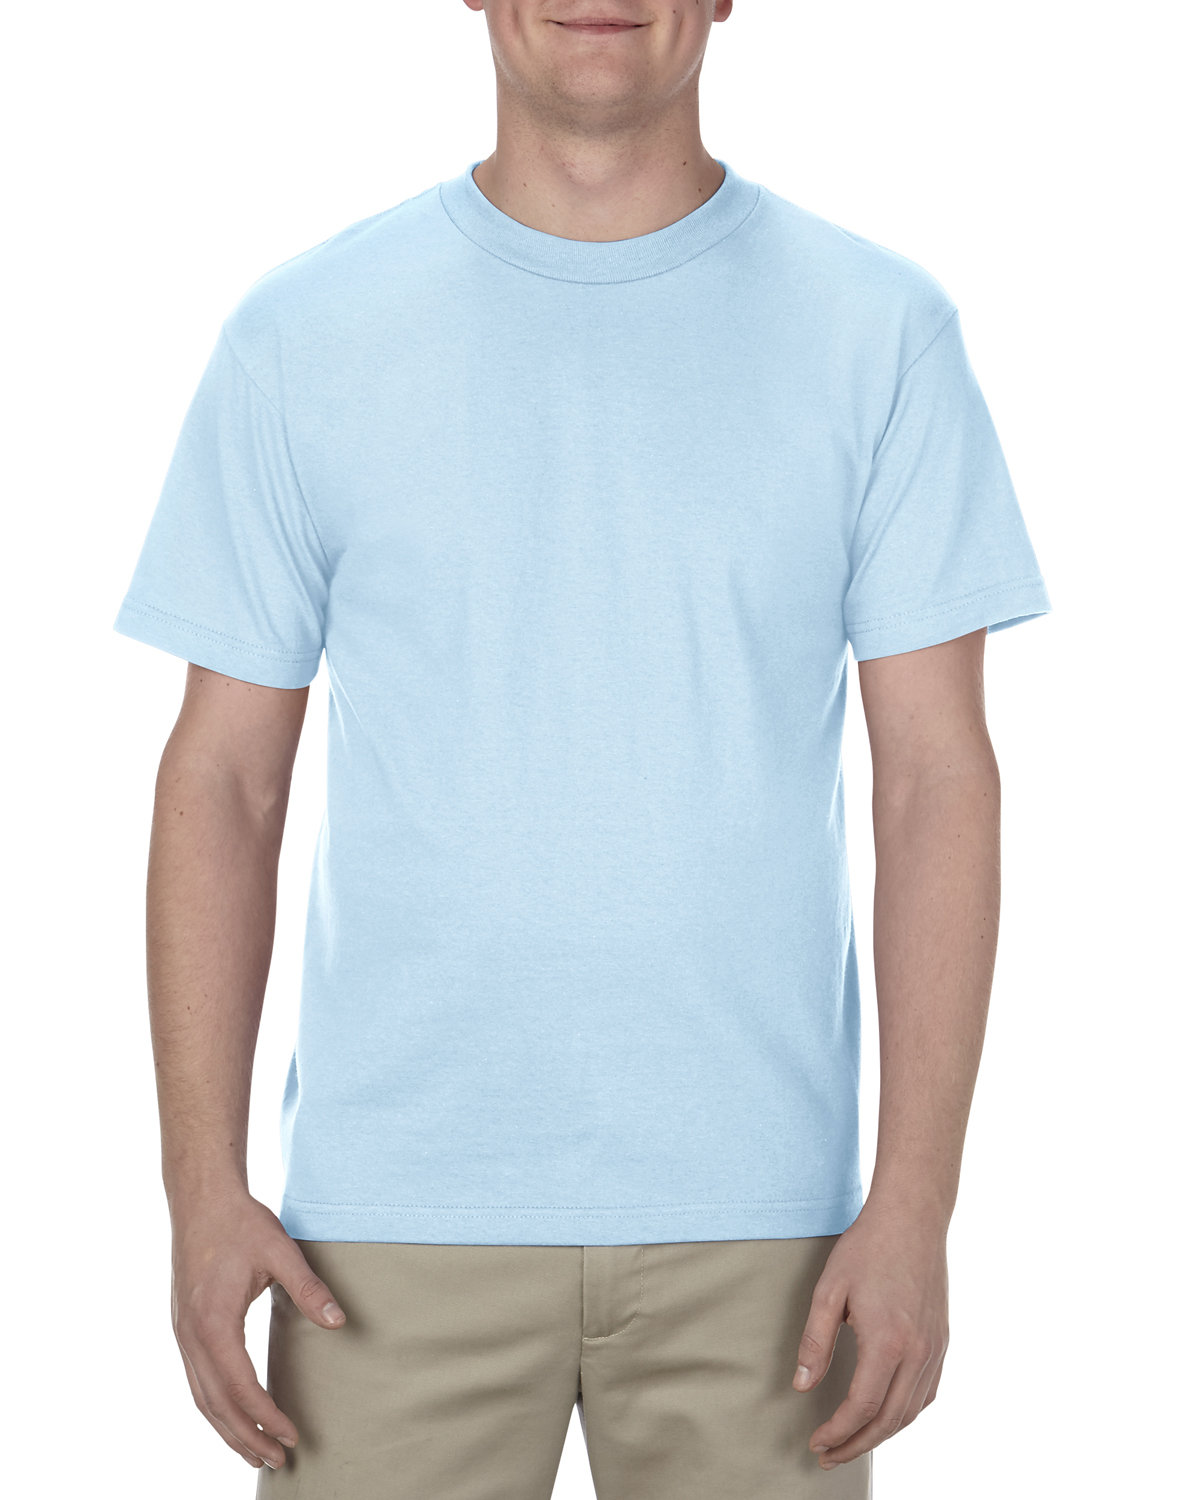 Alstyle Adult 6.0 oz., 100% Cotton T-Shirt POWDER BLUE 